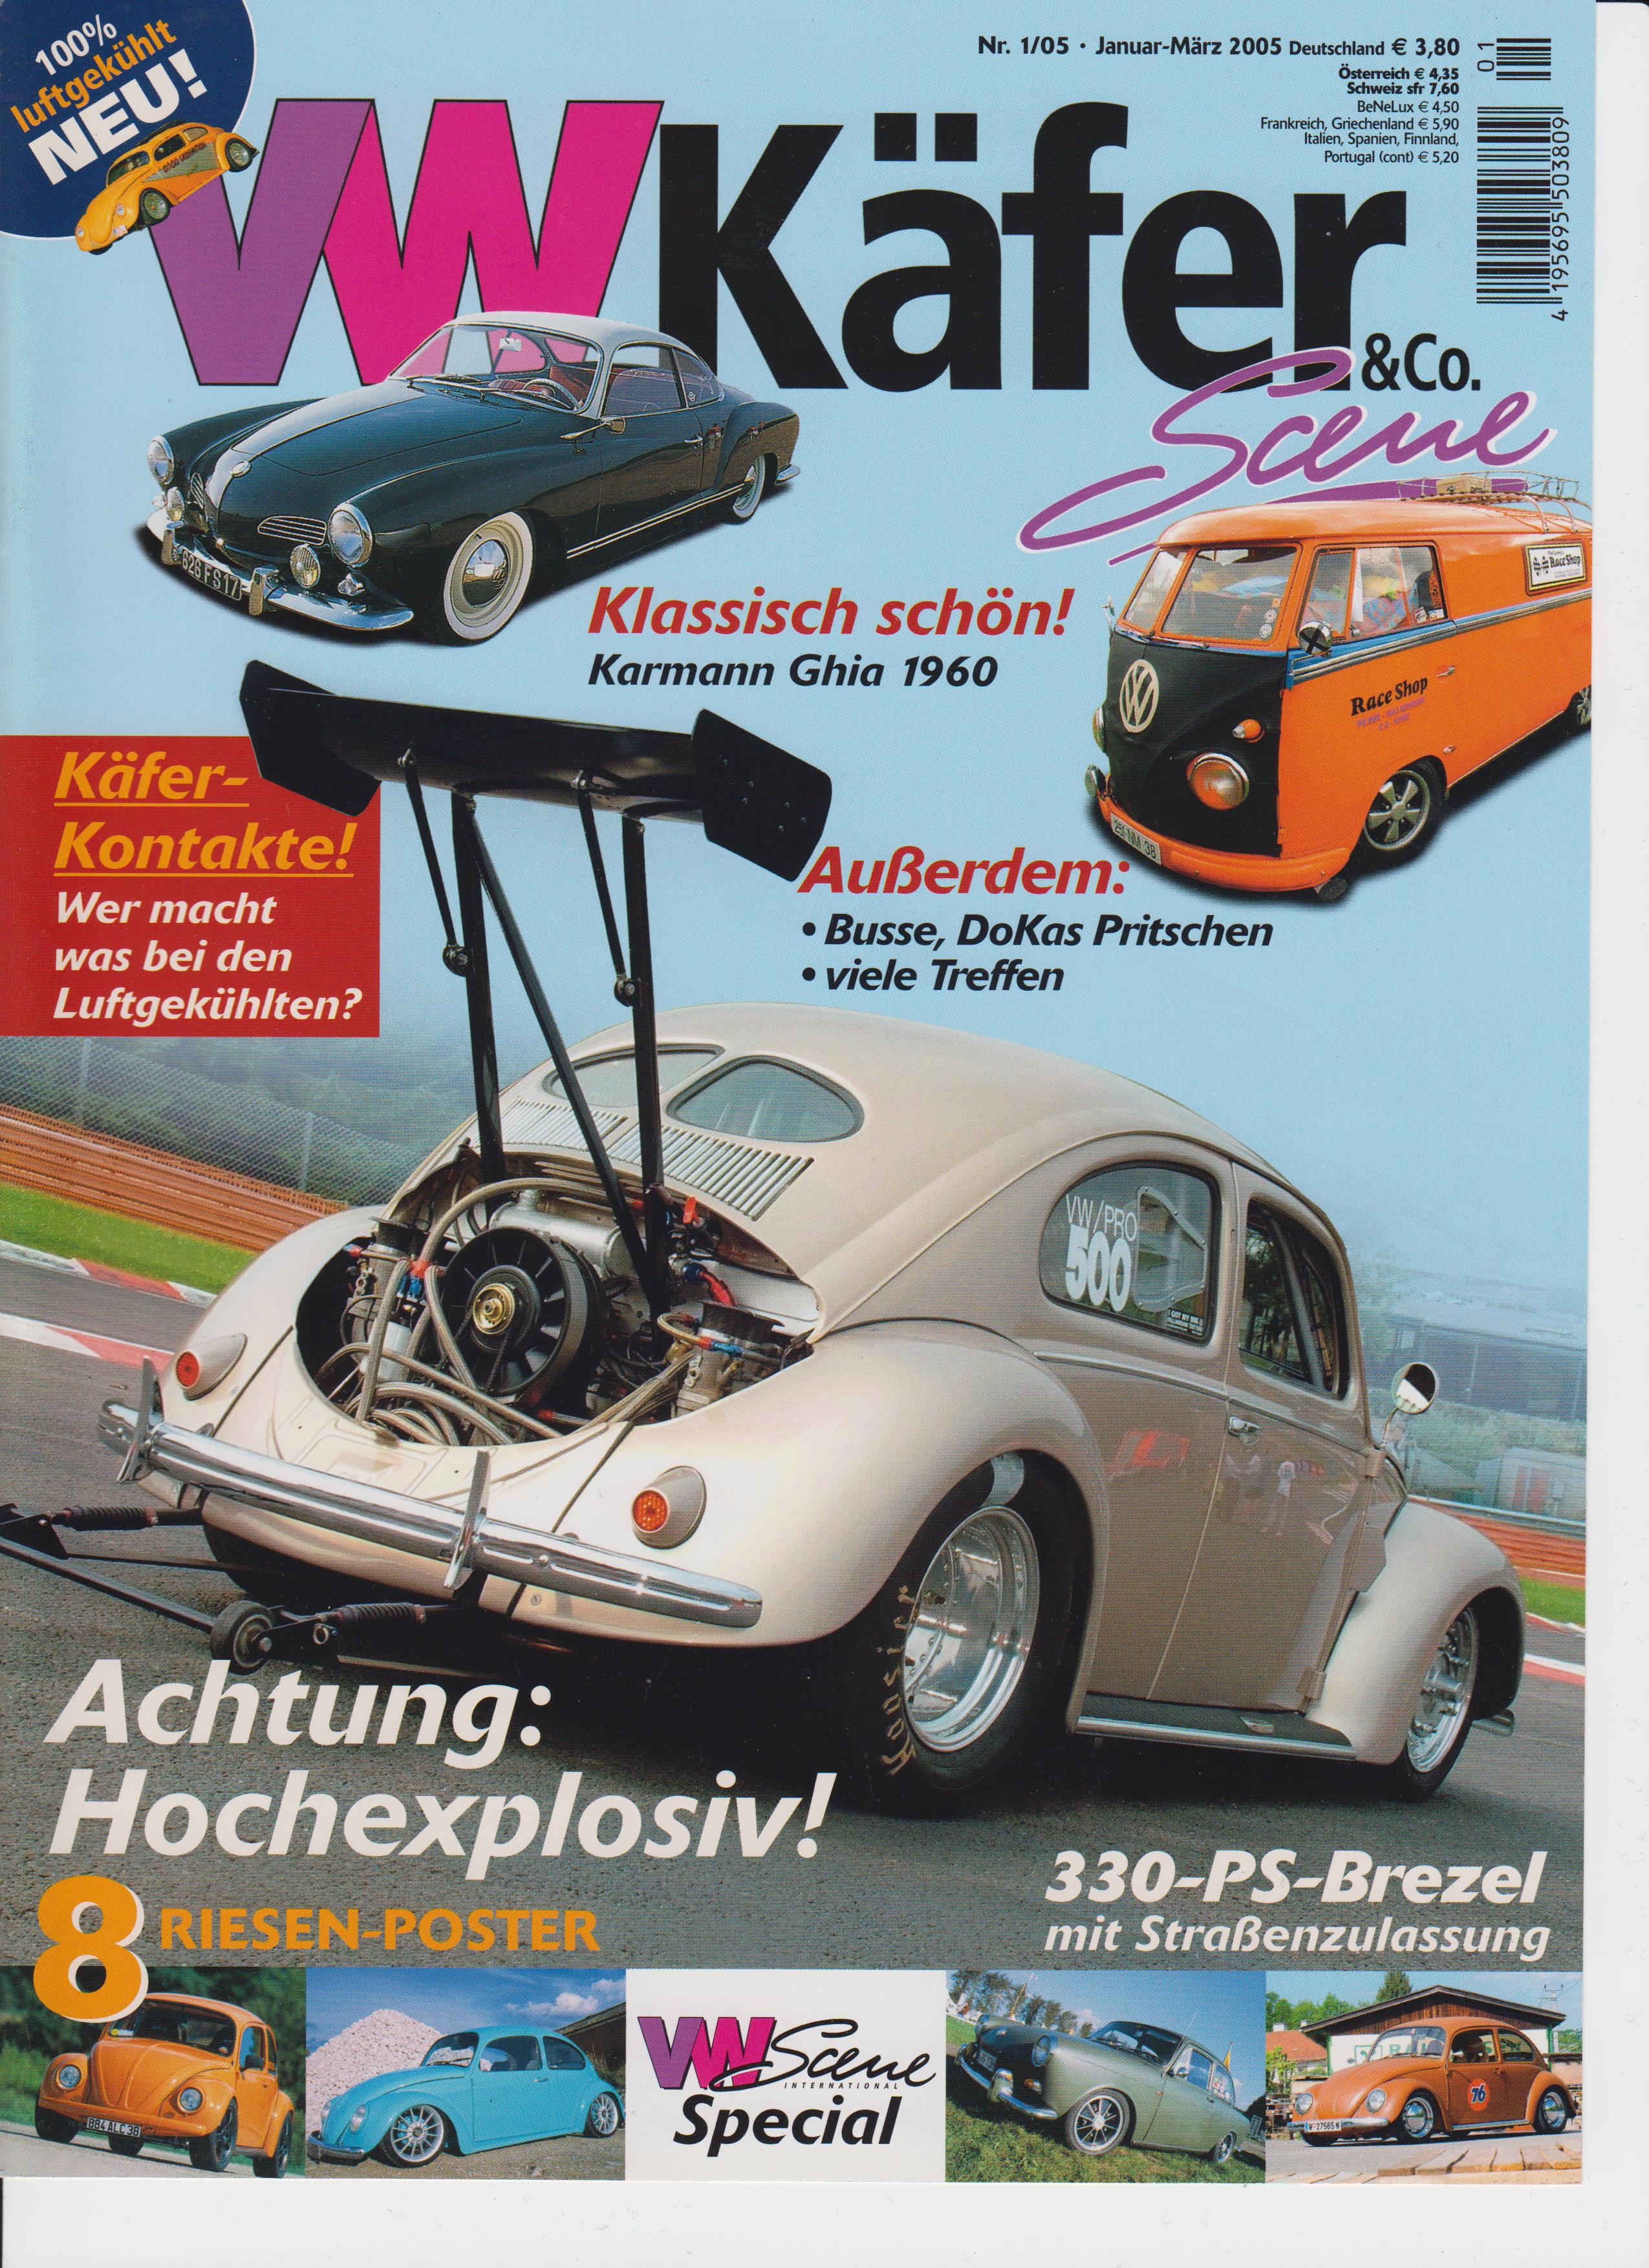 Fachzeitschrift VWKäfer 01 2005